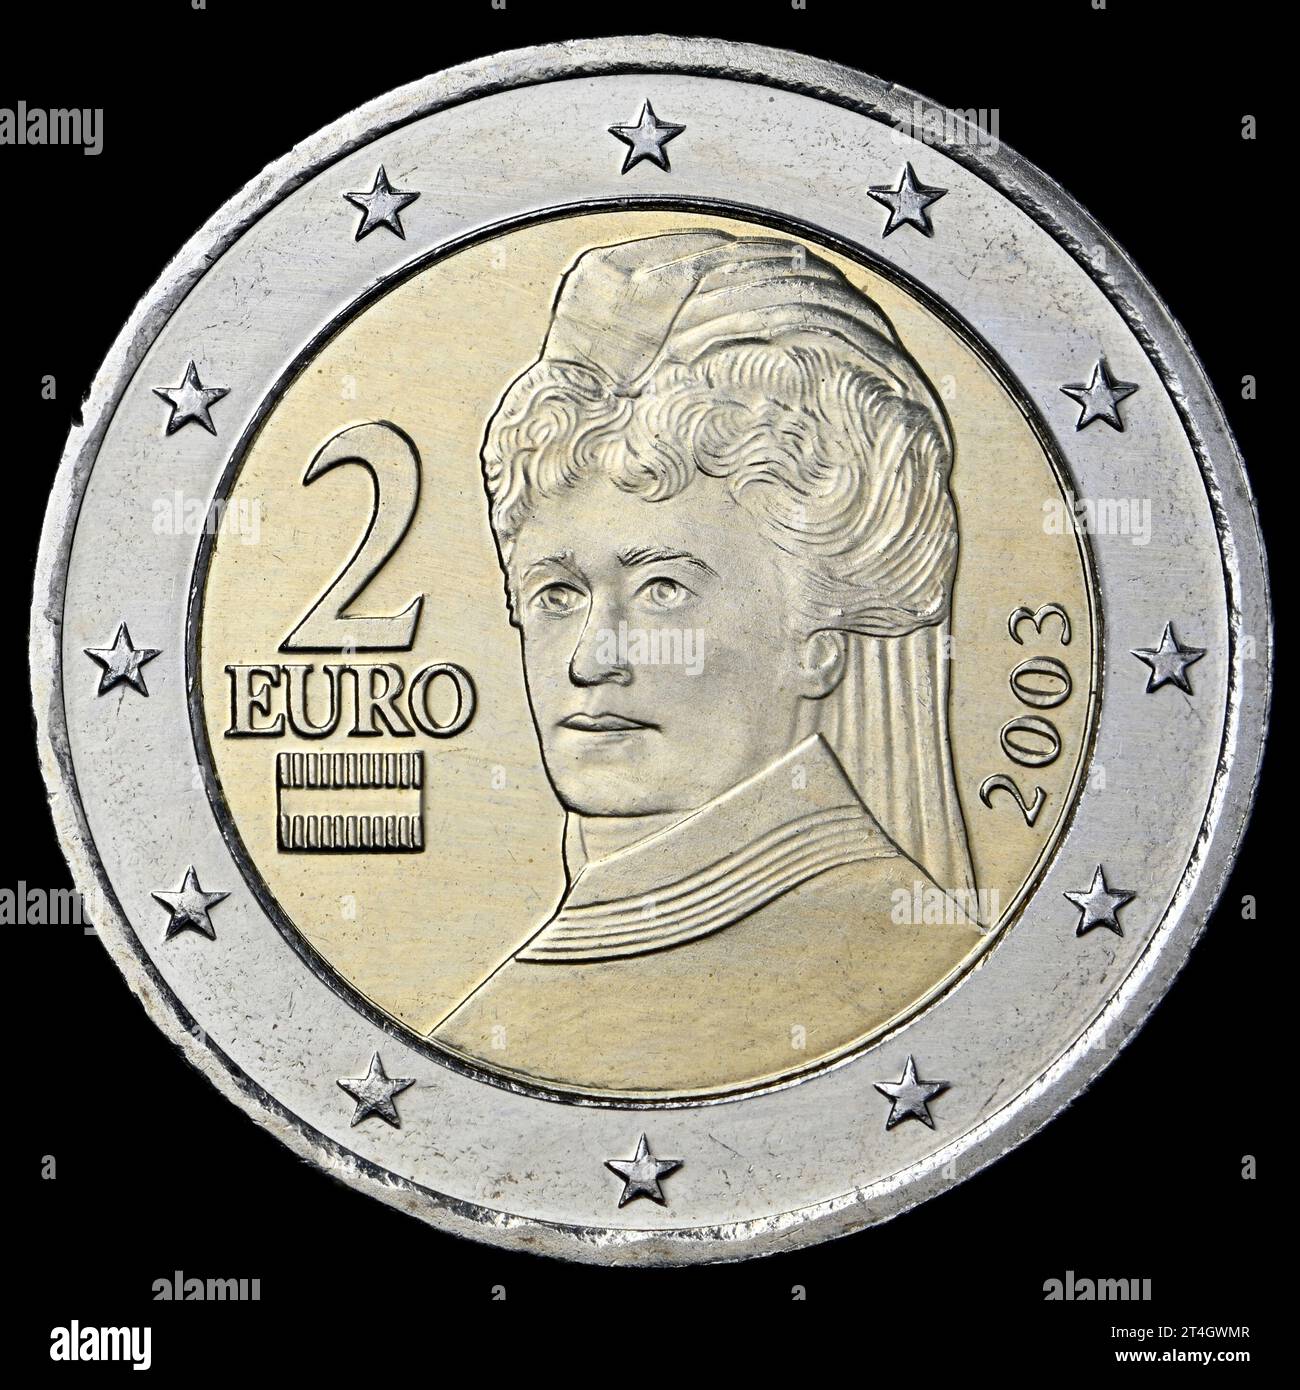 Österreichische 2-Euro-Münze - Bertha von Suttner, eine radikale österreichische Pazifistin und Friedensnobelpreisträgerin Stockfoto